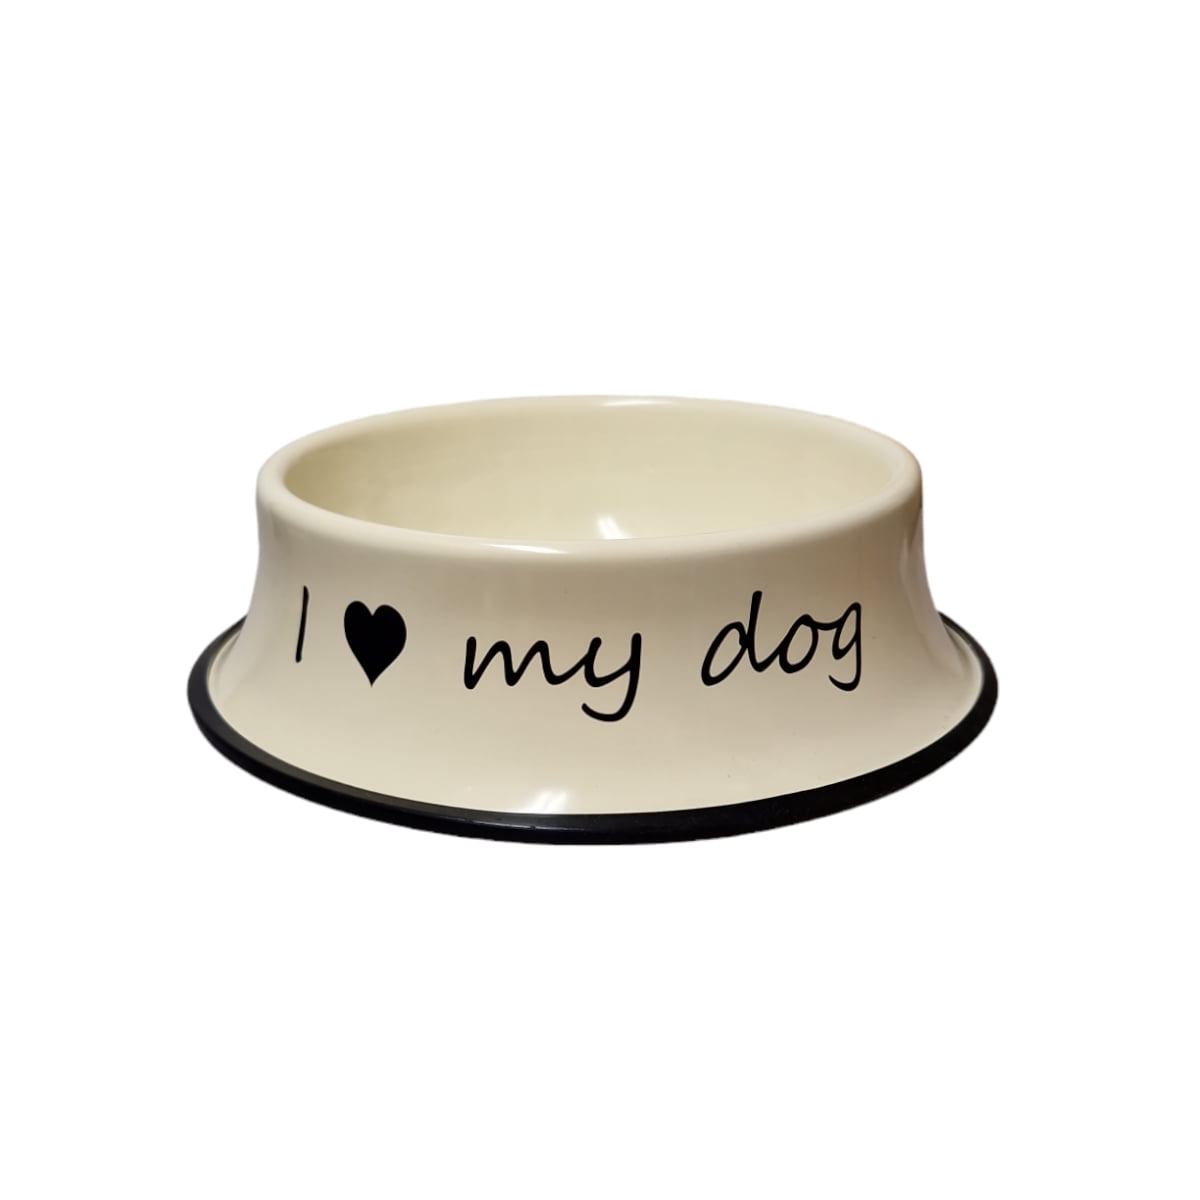 Hundskål i metall med praktisk gummilist i botten som förhindrar att den glider. En fin skål till din pälskling med den självklara texten I love my dog. Diameter 23,5 cm, höjd 6,5 cm.